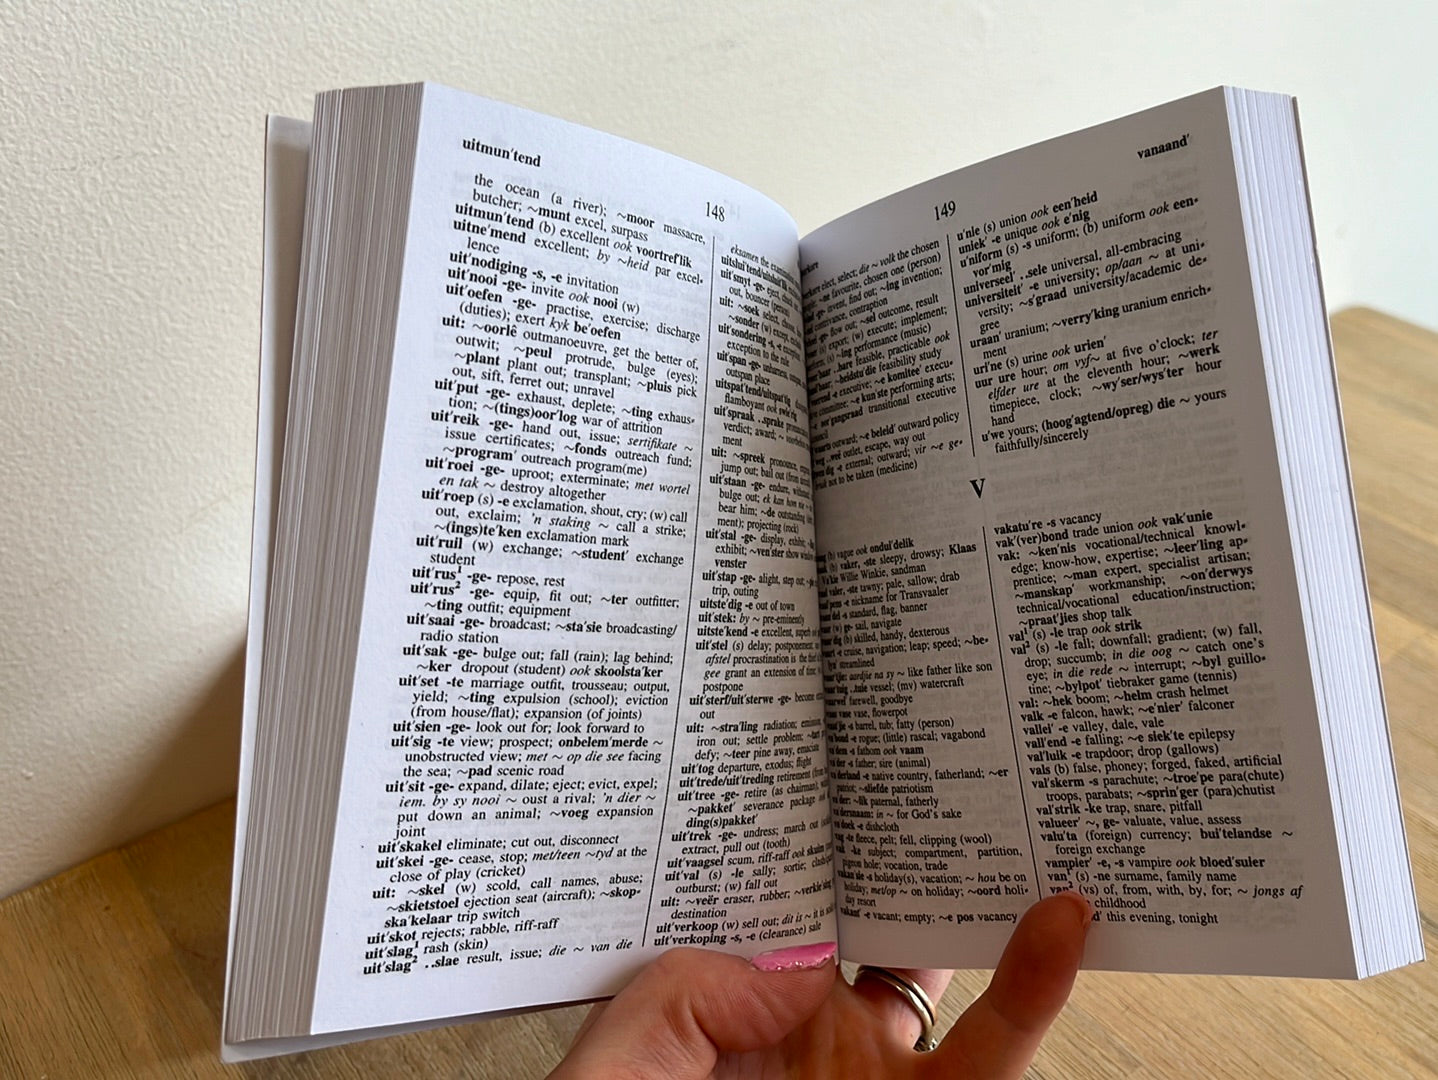 Pharos Klein Woordeboek · Little Dictionary